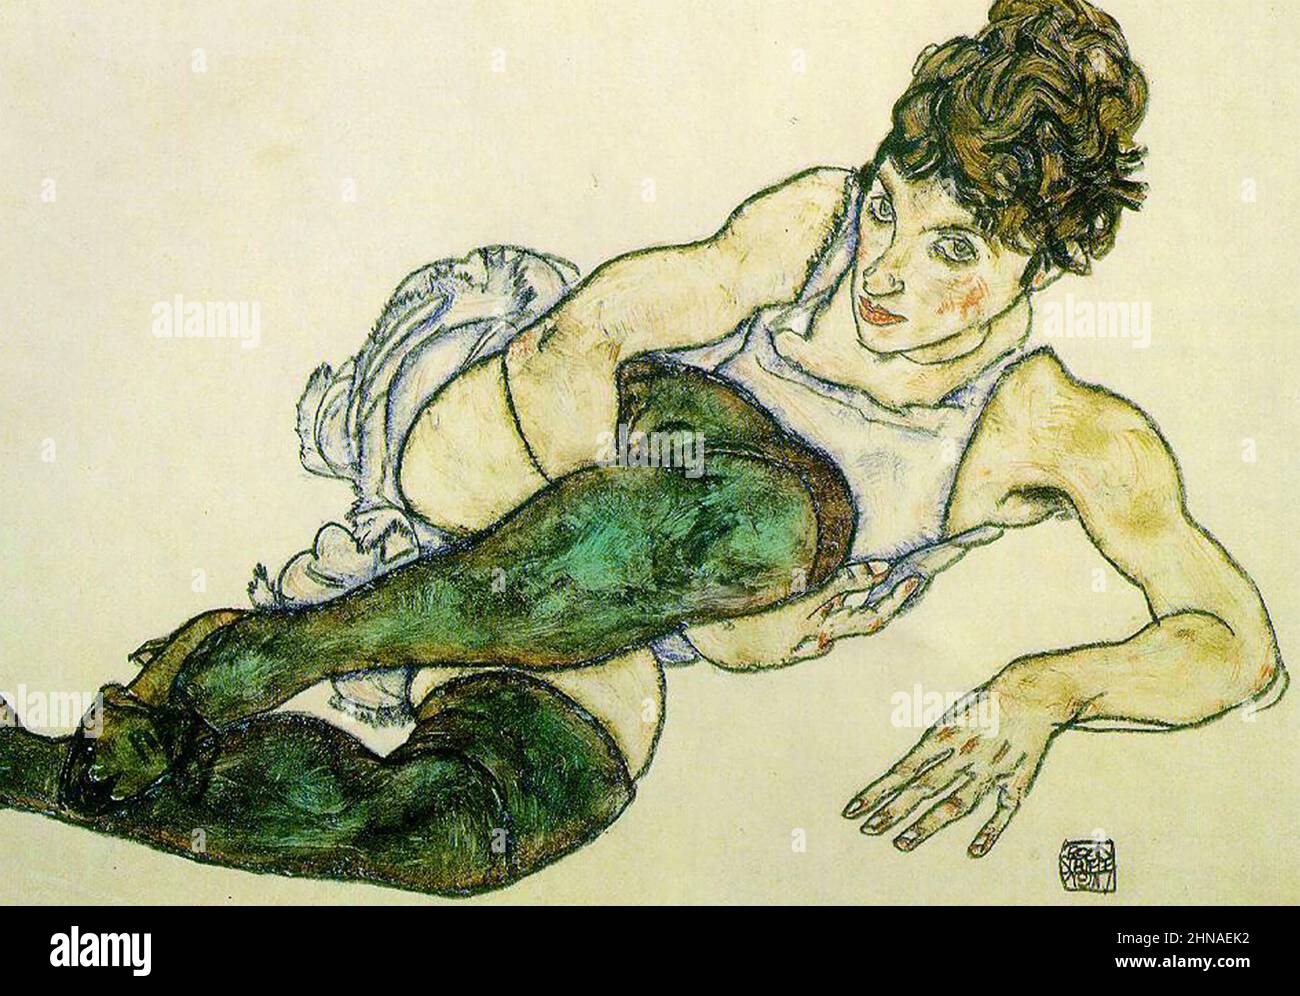 EGON SCHIELE (1890-1918) peintre expressionniste autrichien. Sa peinture de 1914 Bas verts Banque D'Images